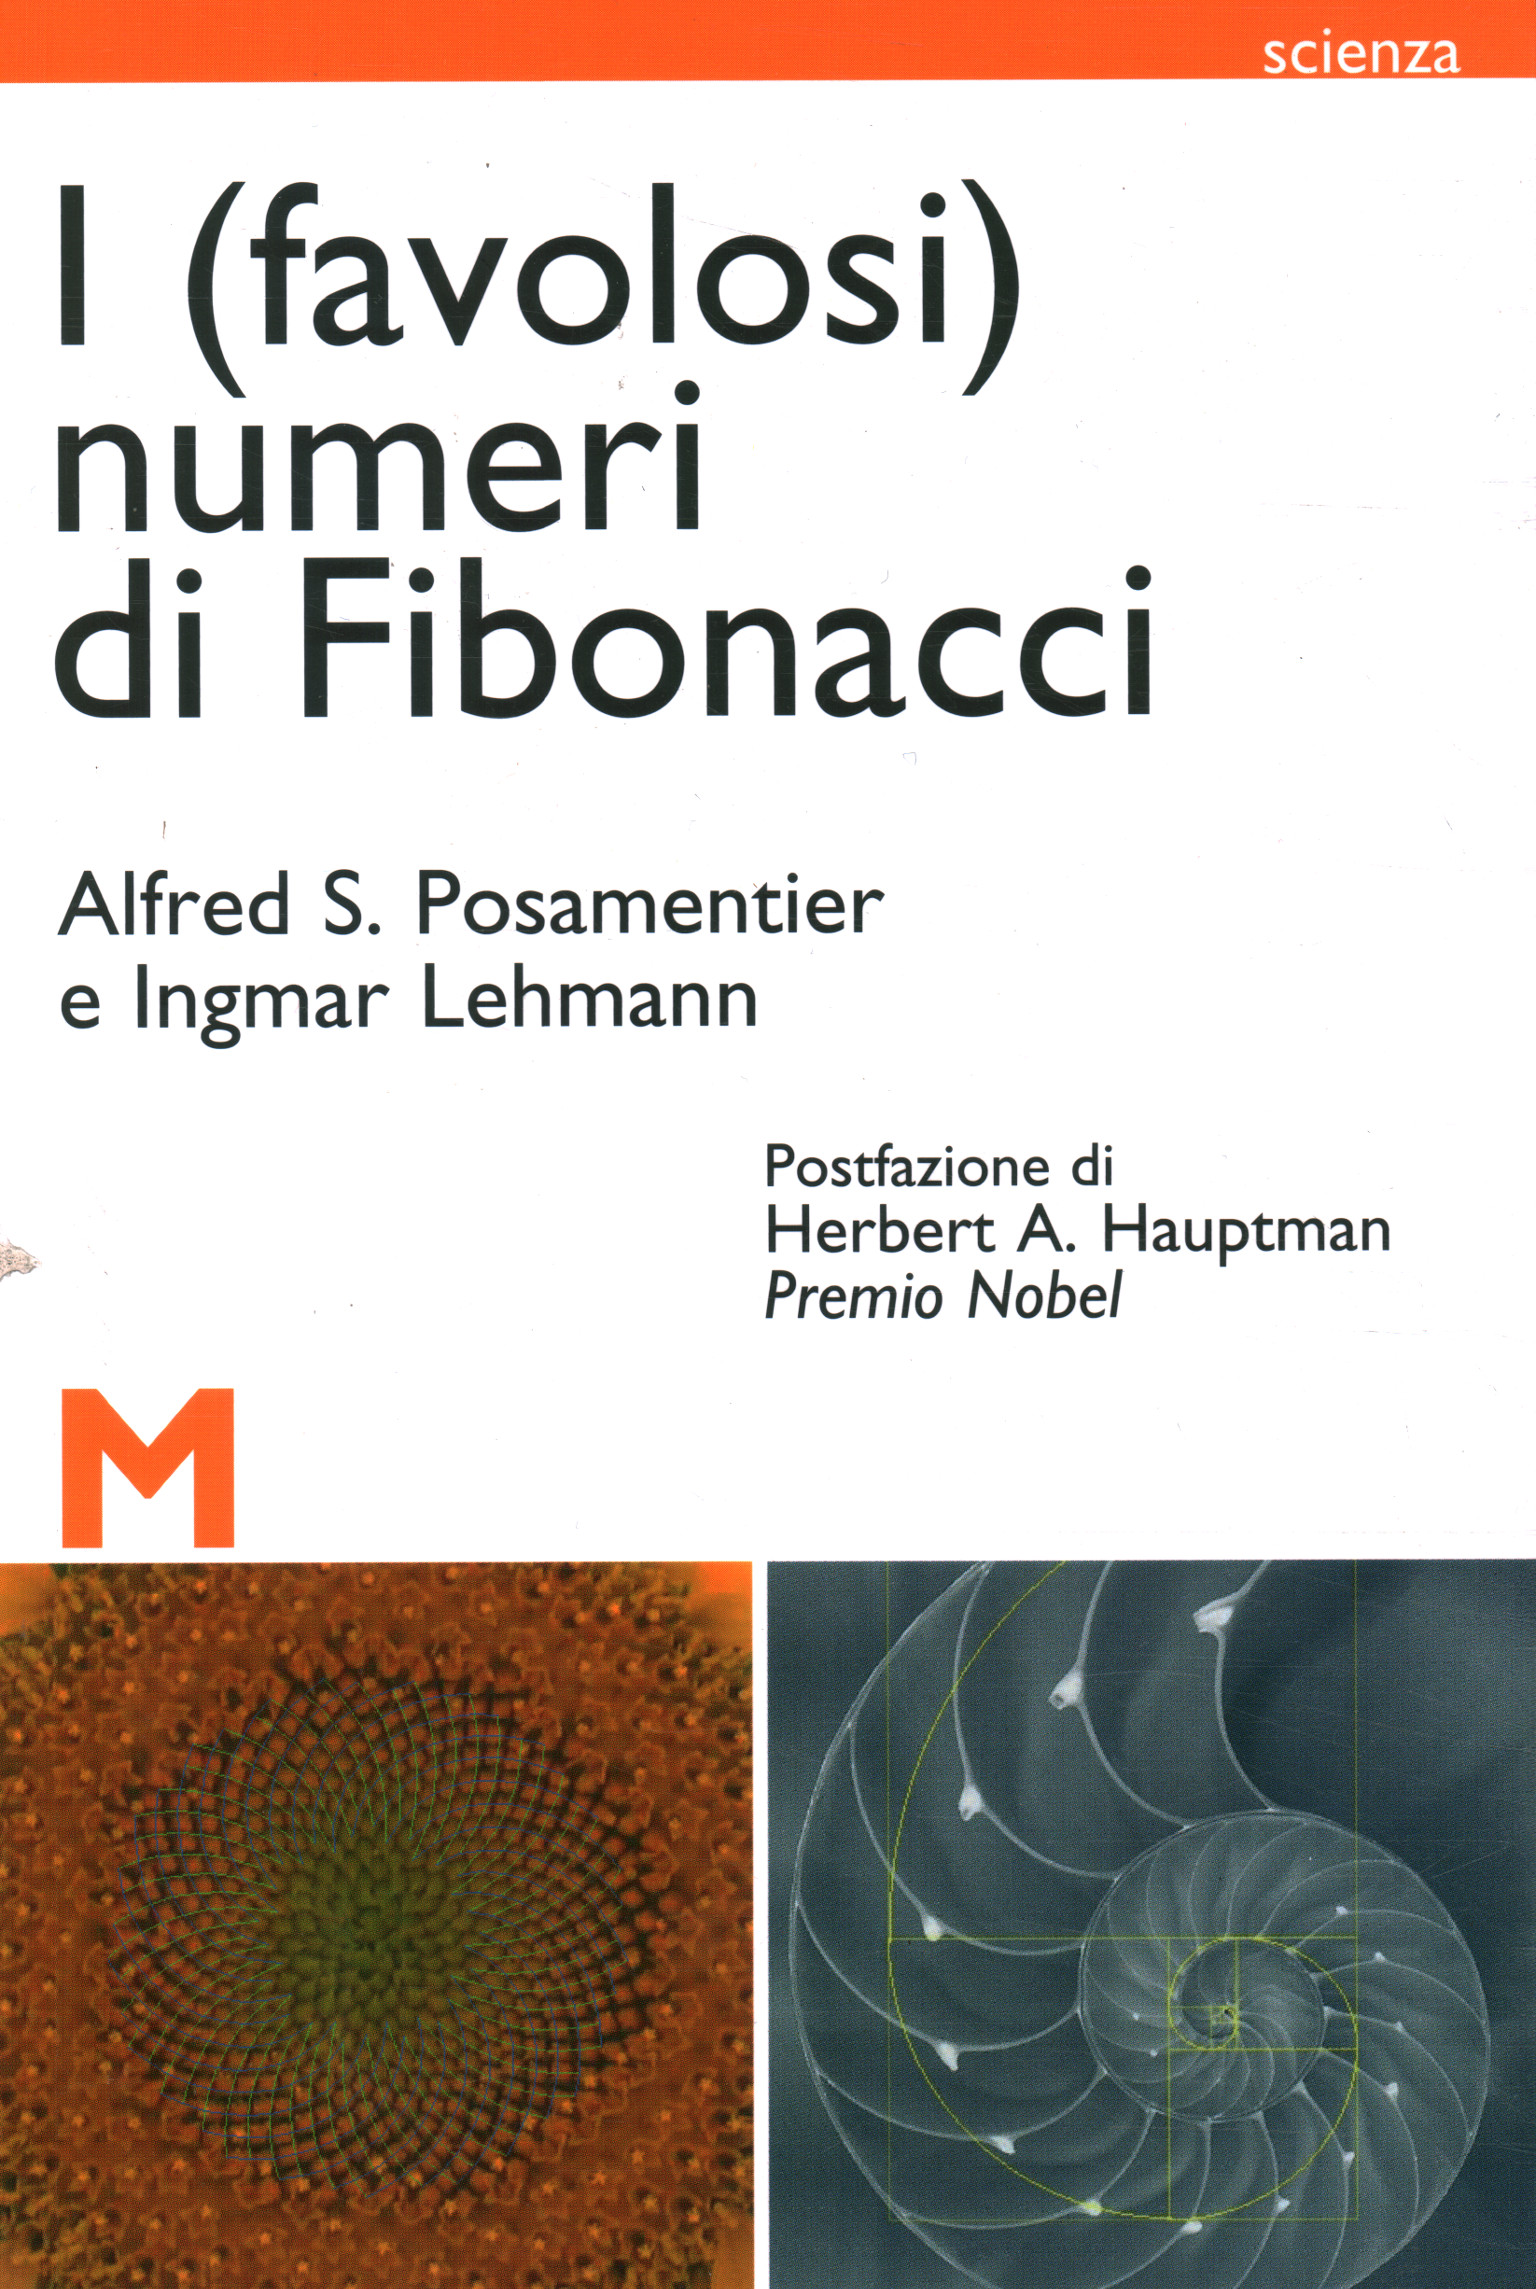 Les (fabuleux) nombres de Fibonacci